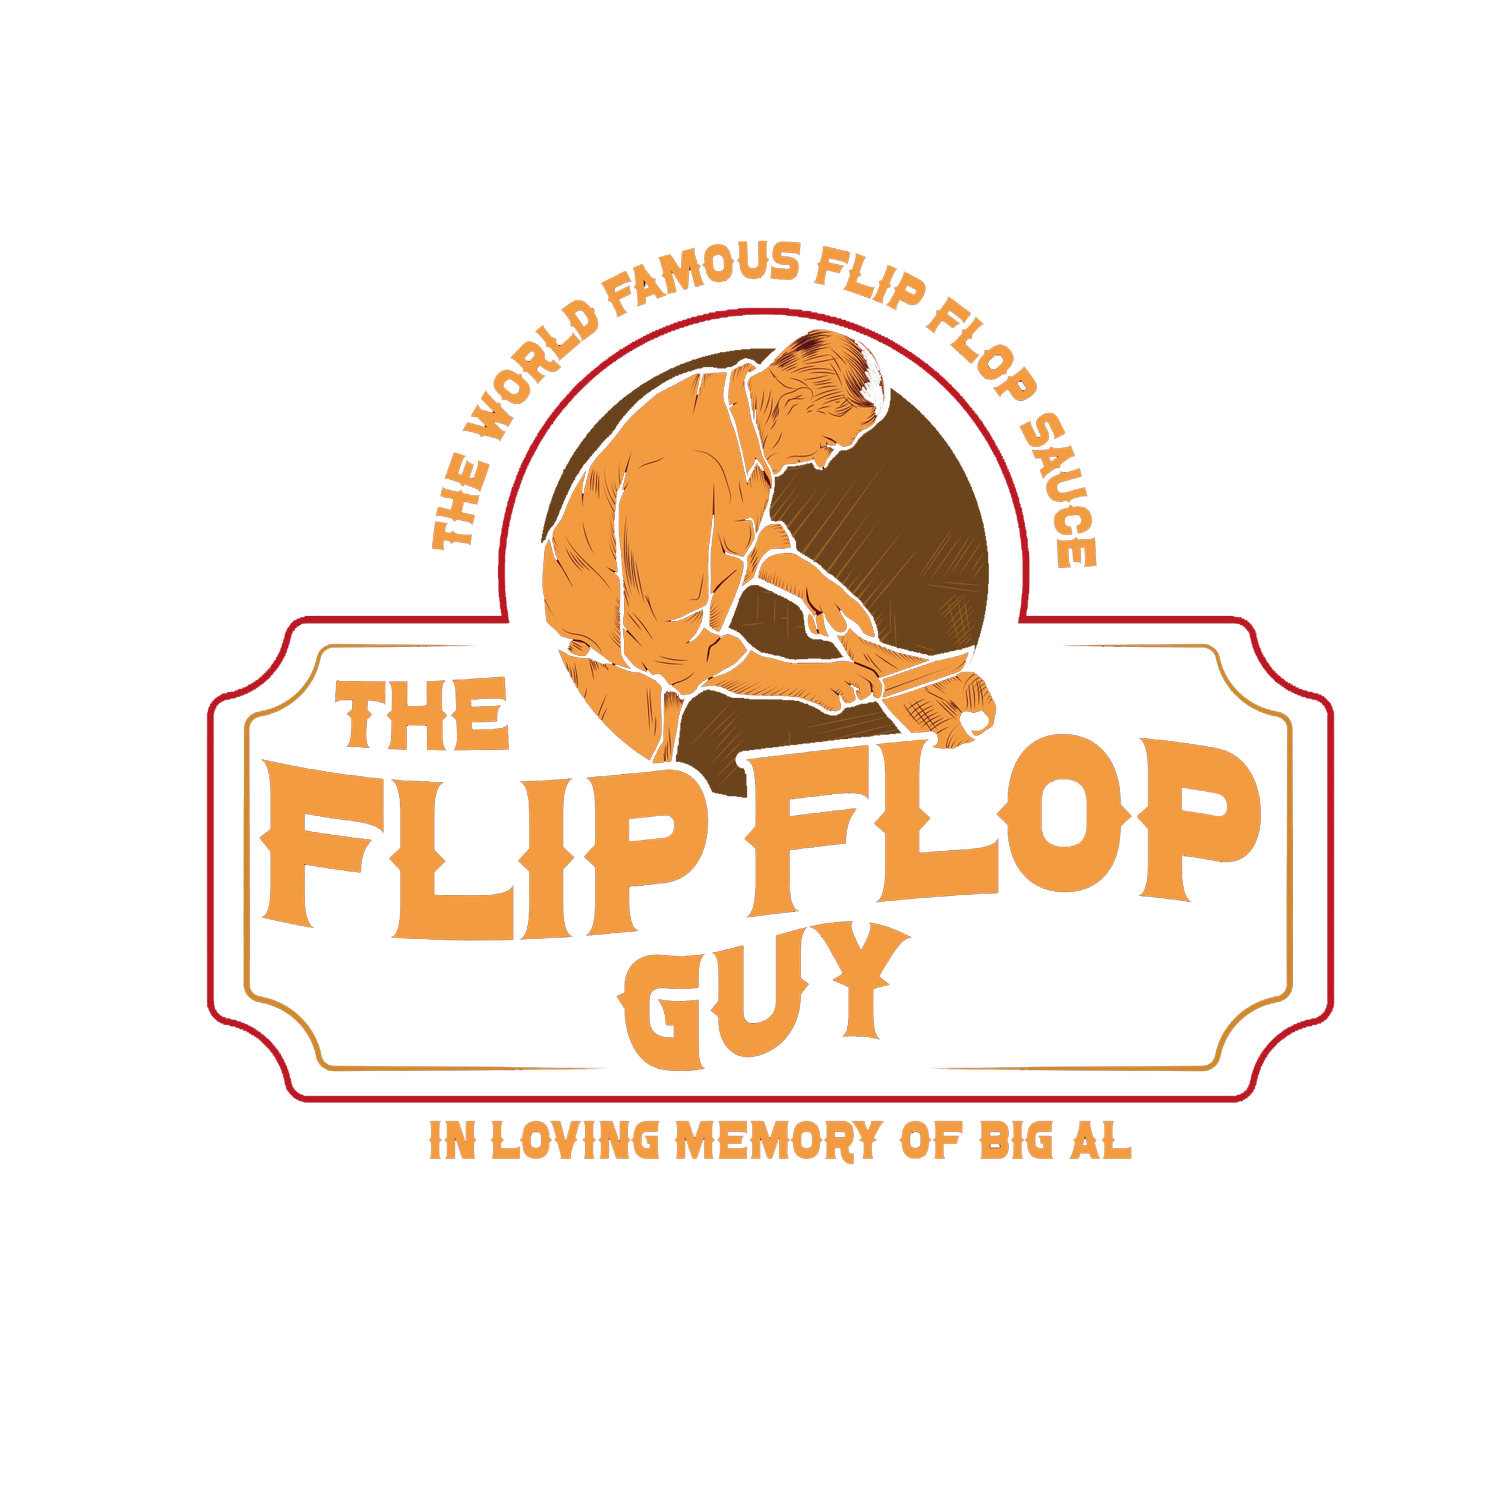 www.theflipflopguy.com